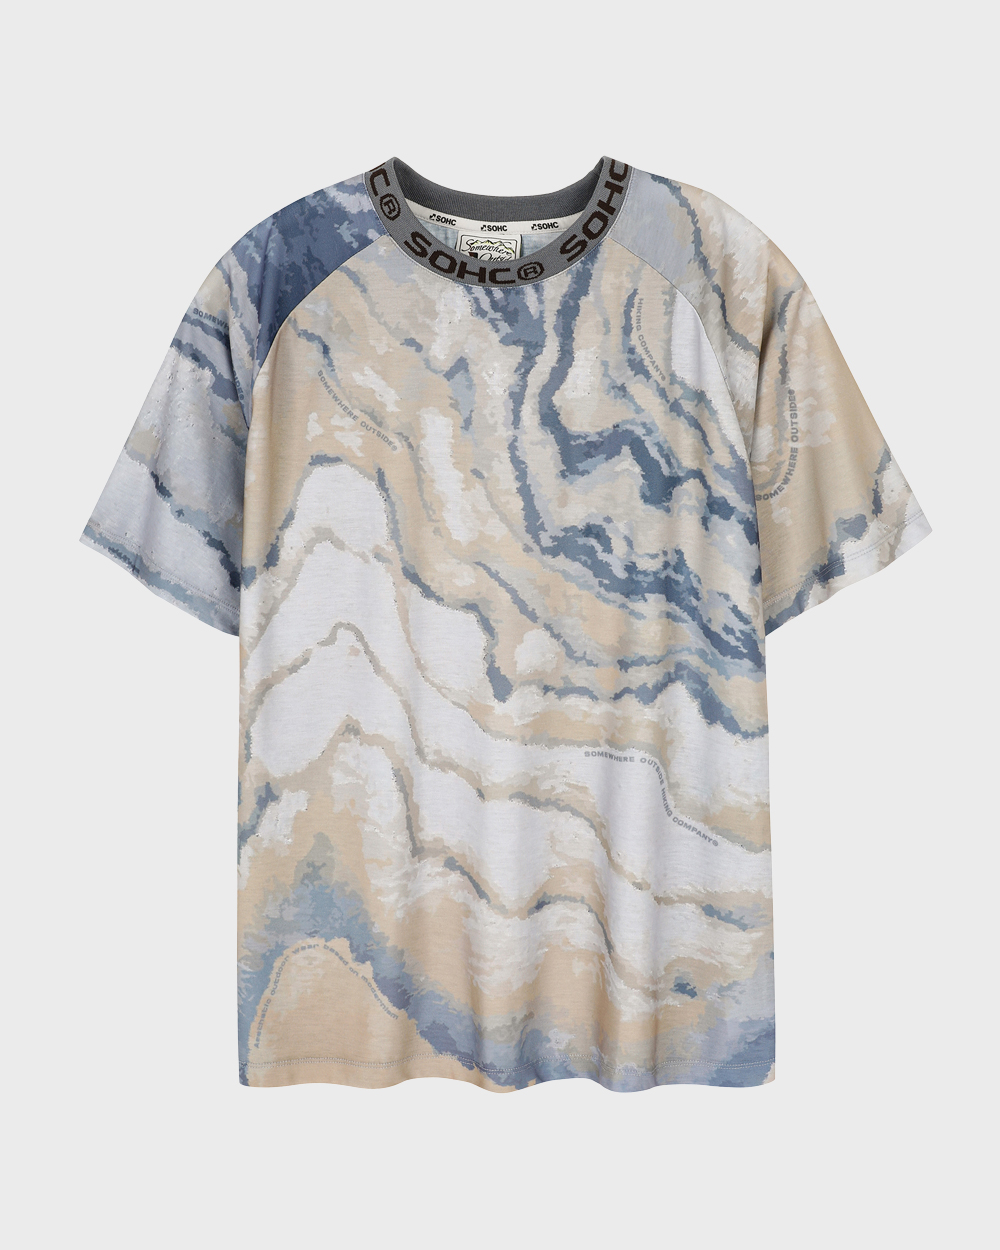 Oak Cross-section Graphic T Shirt (Multi Colors)